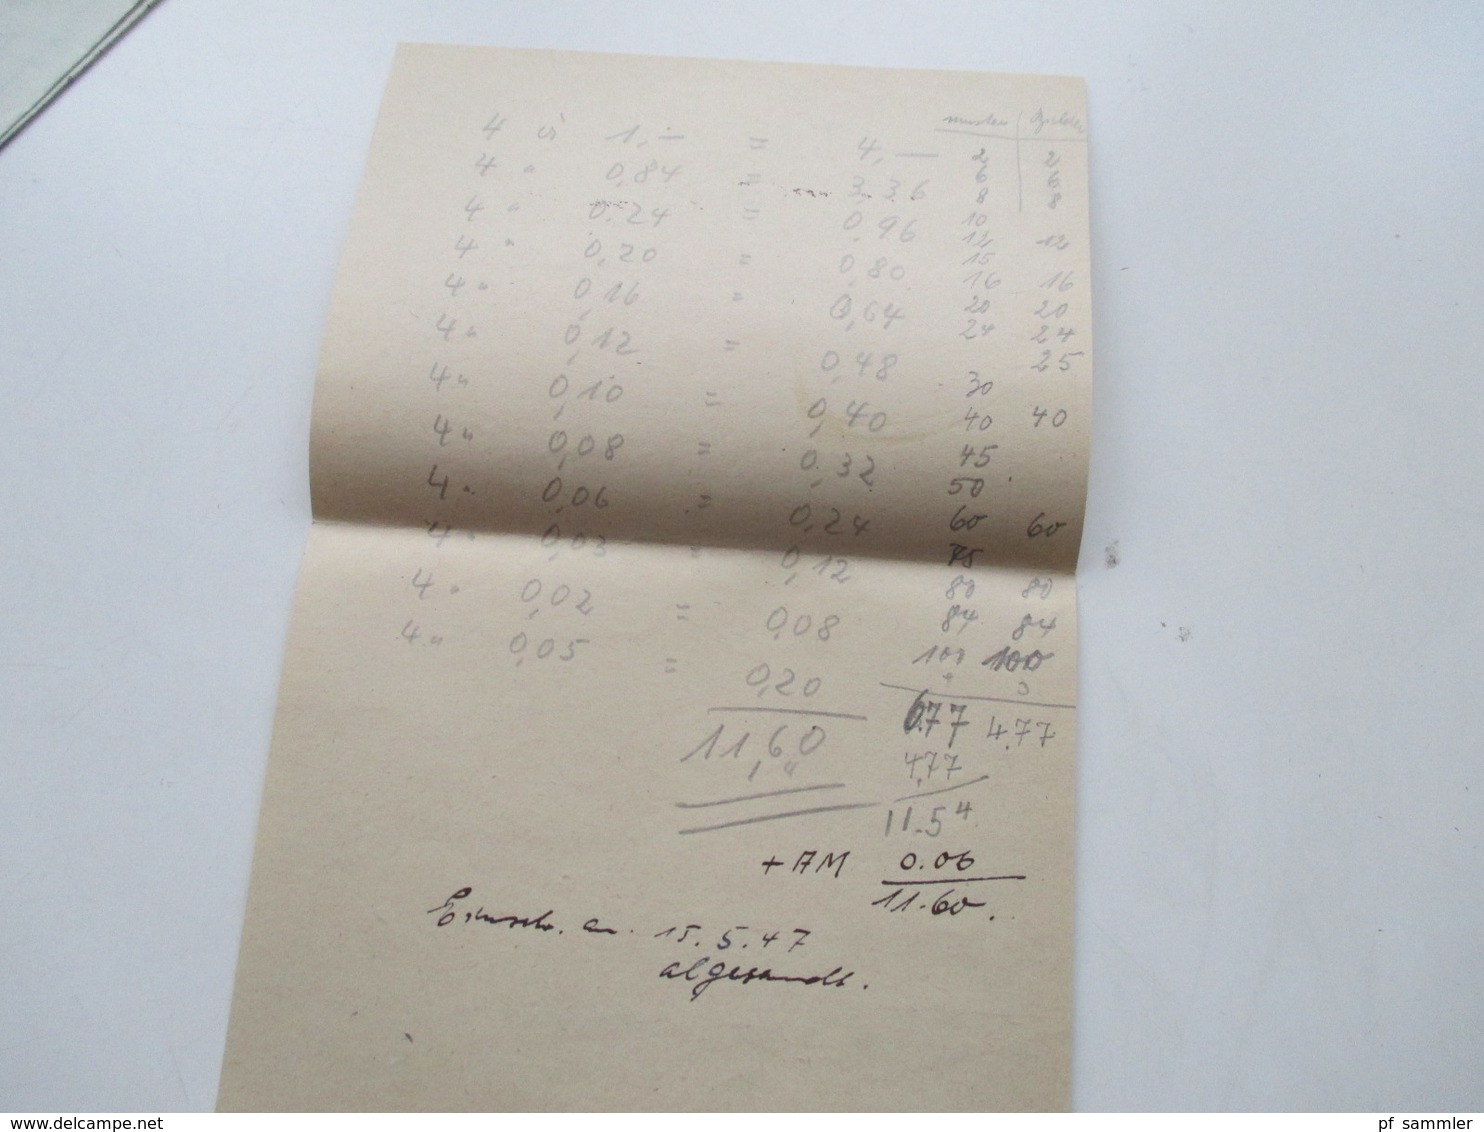 Franz. Zone Saargebiet 1947 Michel Nr. 211 MeF waagerechtes Paar Brief mit Inhalt! Tiefbau Konstantin v. Bormann